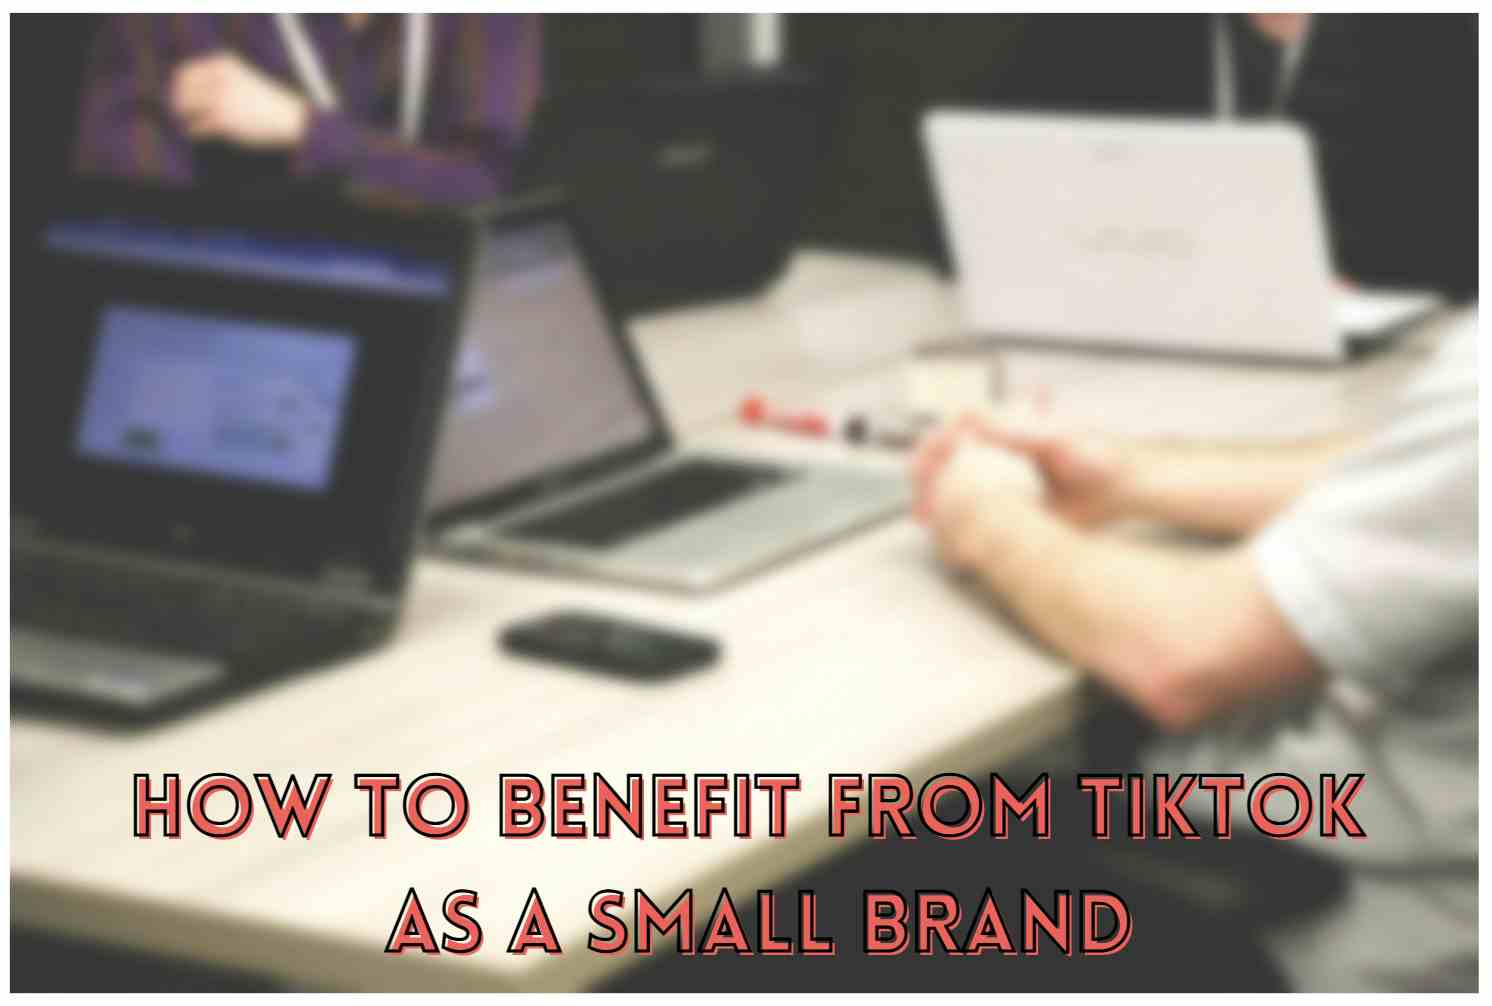 소규모 브랜드로서 TikTok의 혜택을 받는 방법